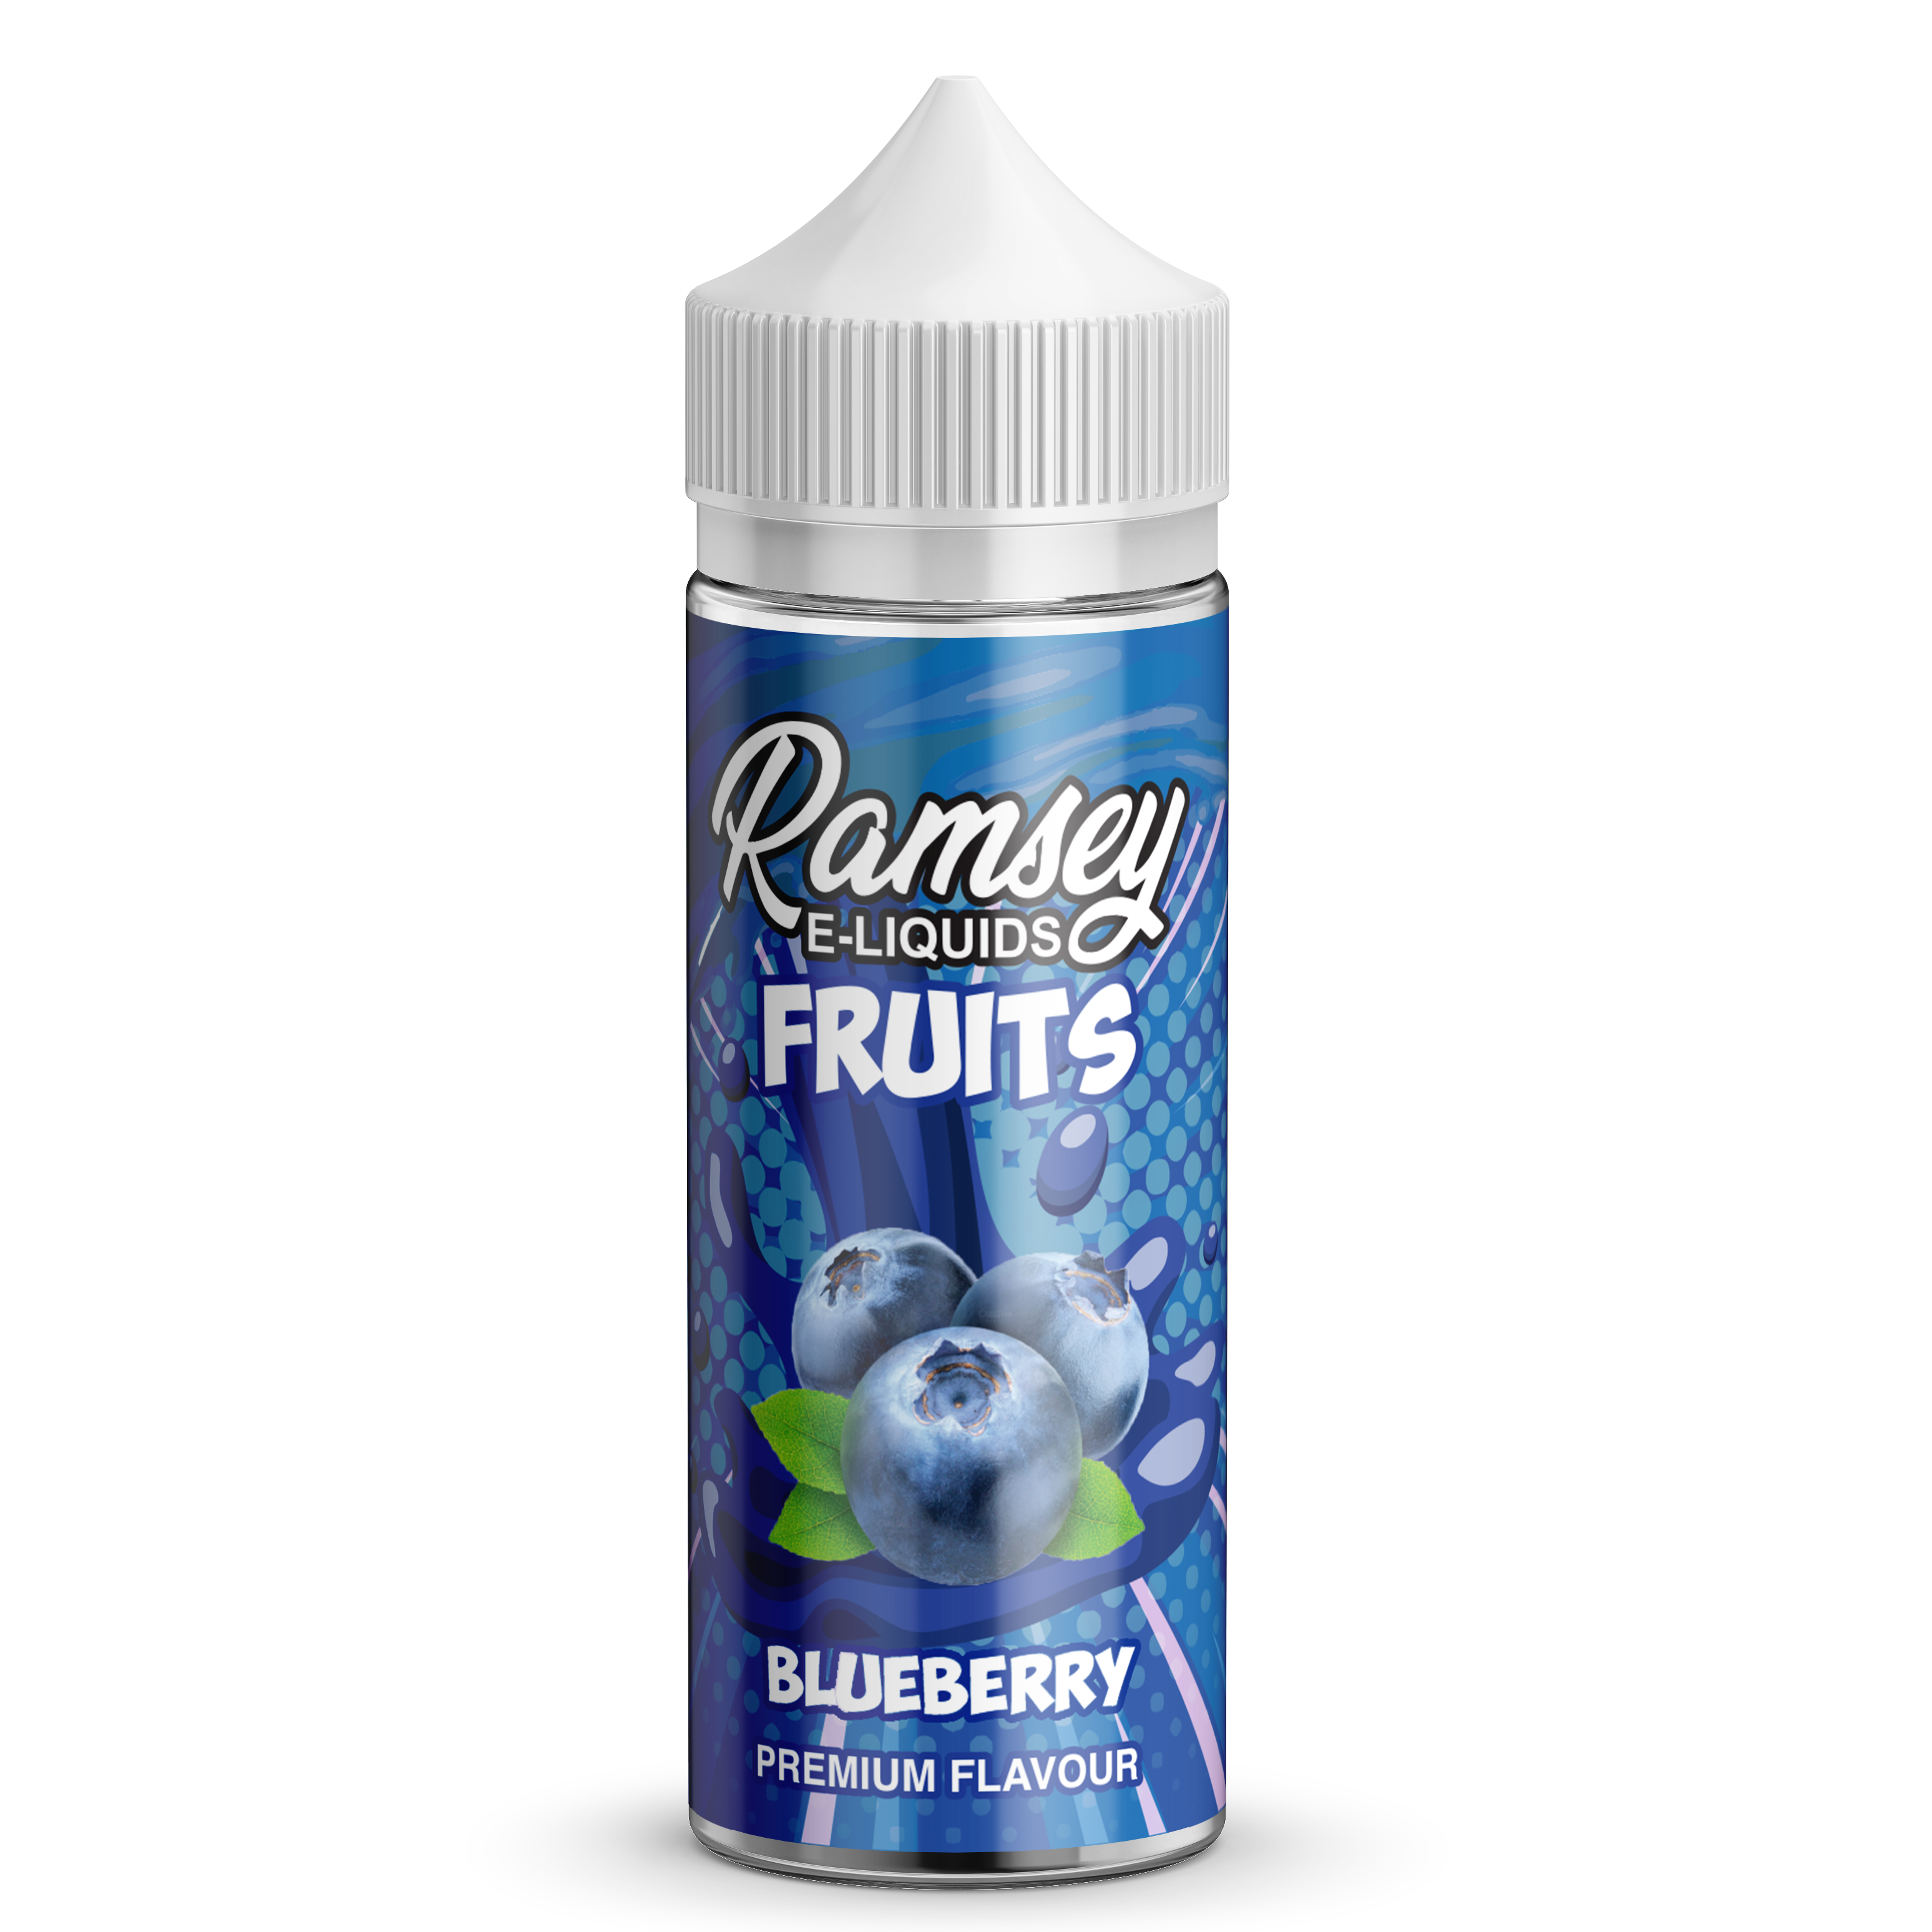 Ramsey E-Liquids Fruits Blueberry 0mg 100ml Shortfill E-Liquid